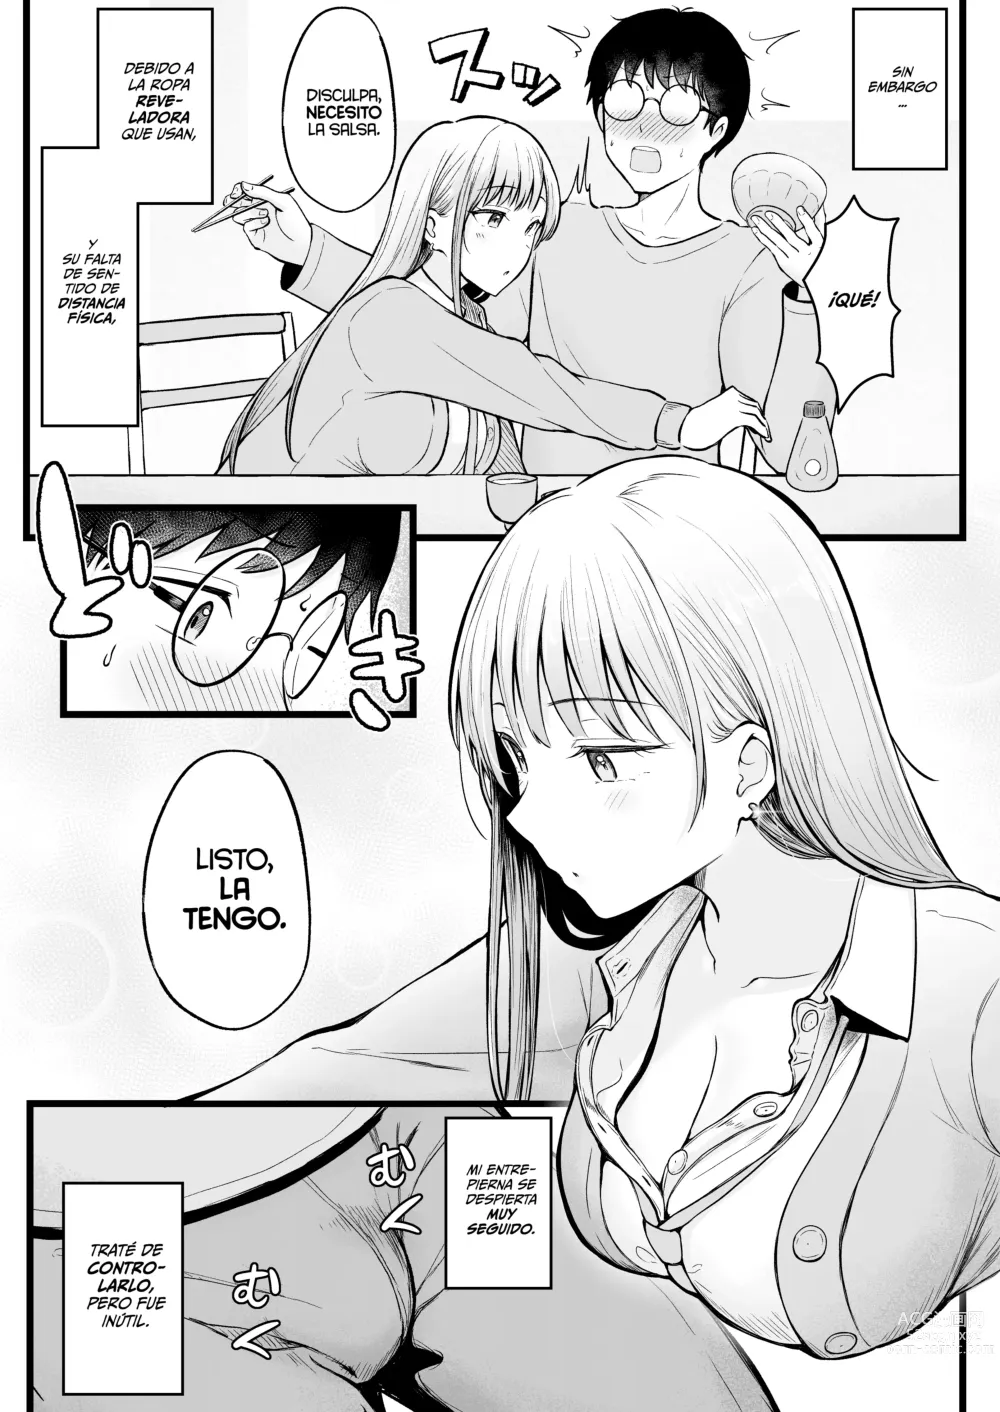 Page 10 of doujinshi Soy el Administrador del Dormitorio de Chicas, Siendo Manipulado por las Chicas que Viven Ahí.